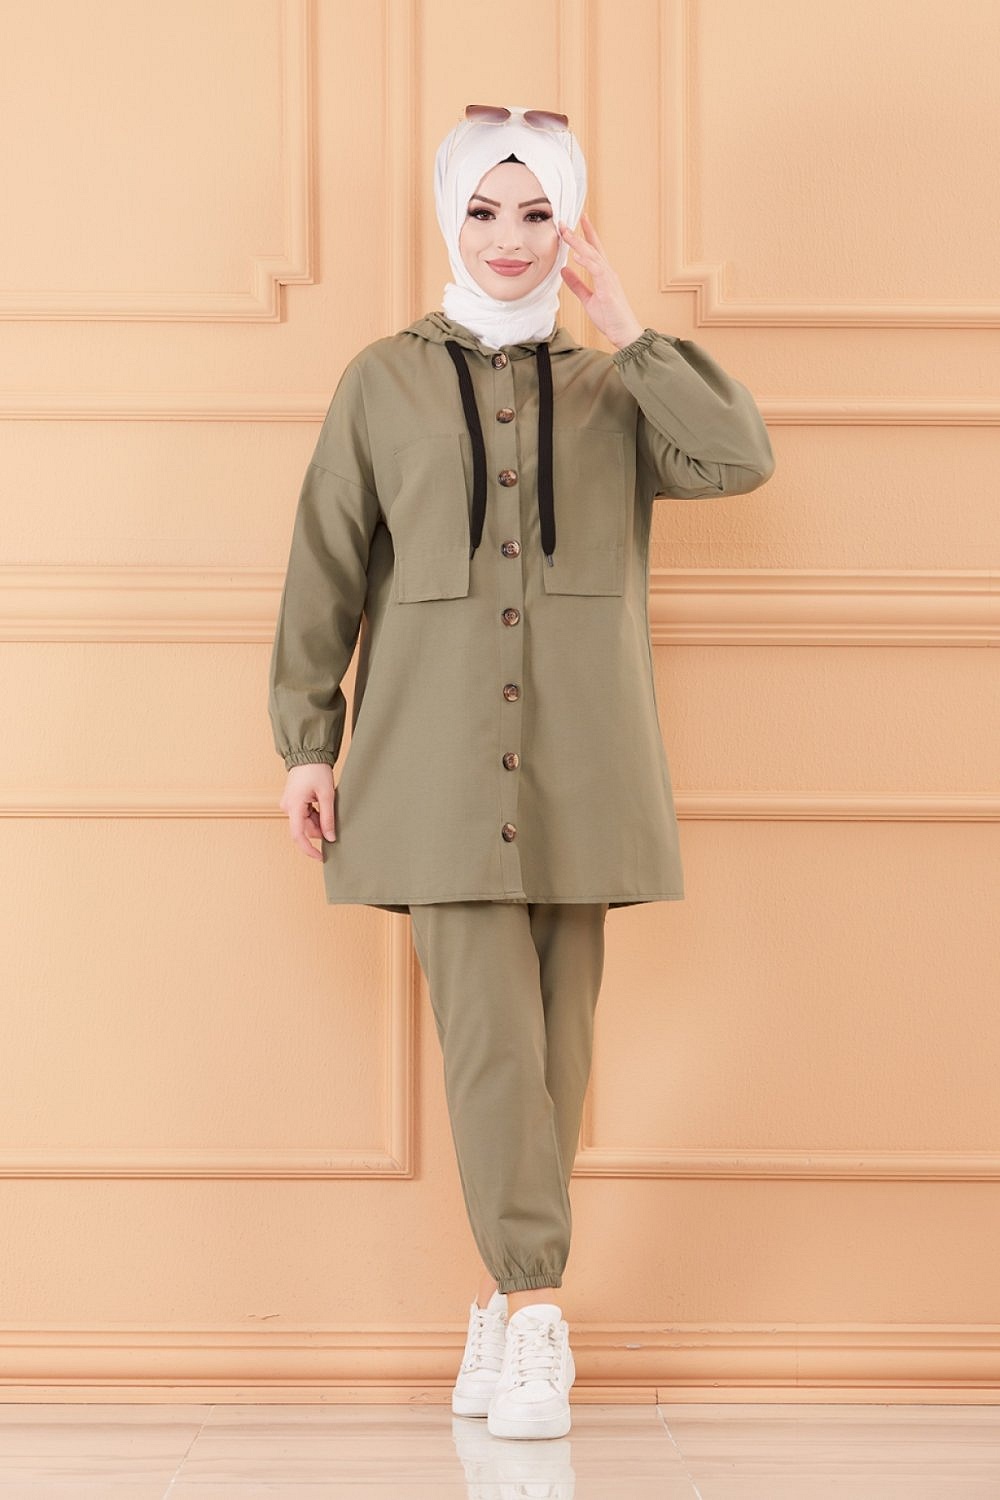 Ensemble casual femme veste et pantalon (Vêtement Hijeb) - Couleur kaki  Sélectionner la taille S